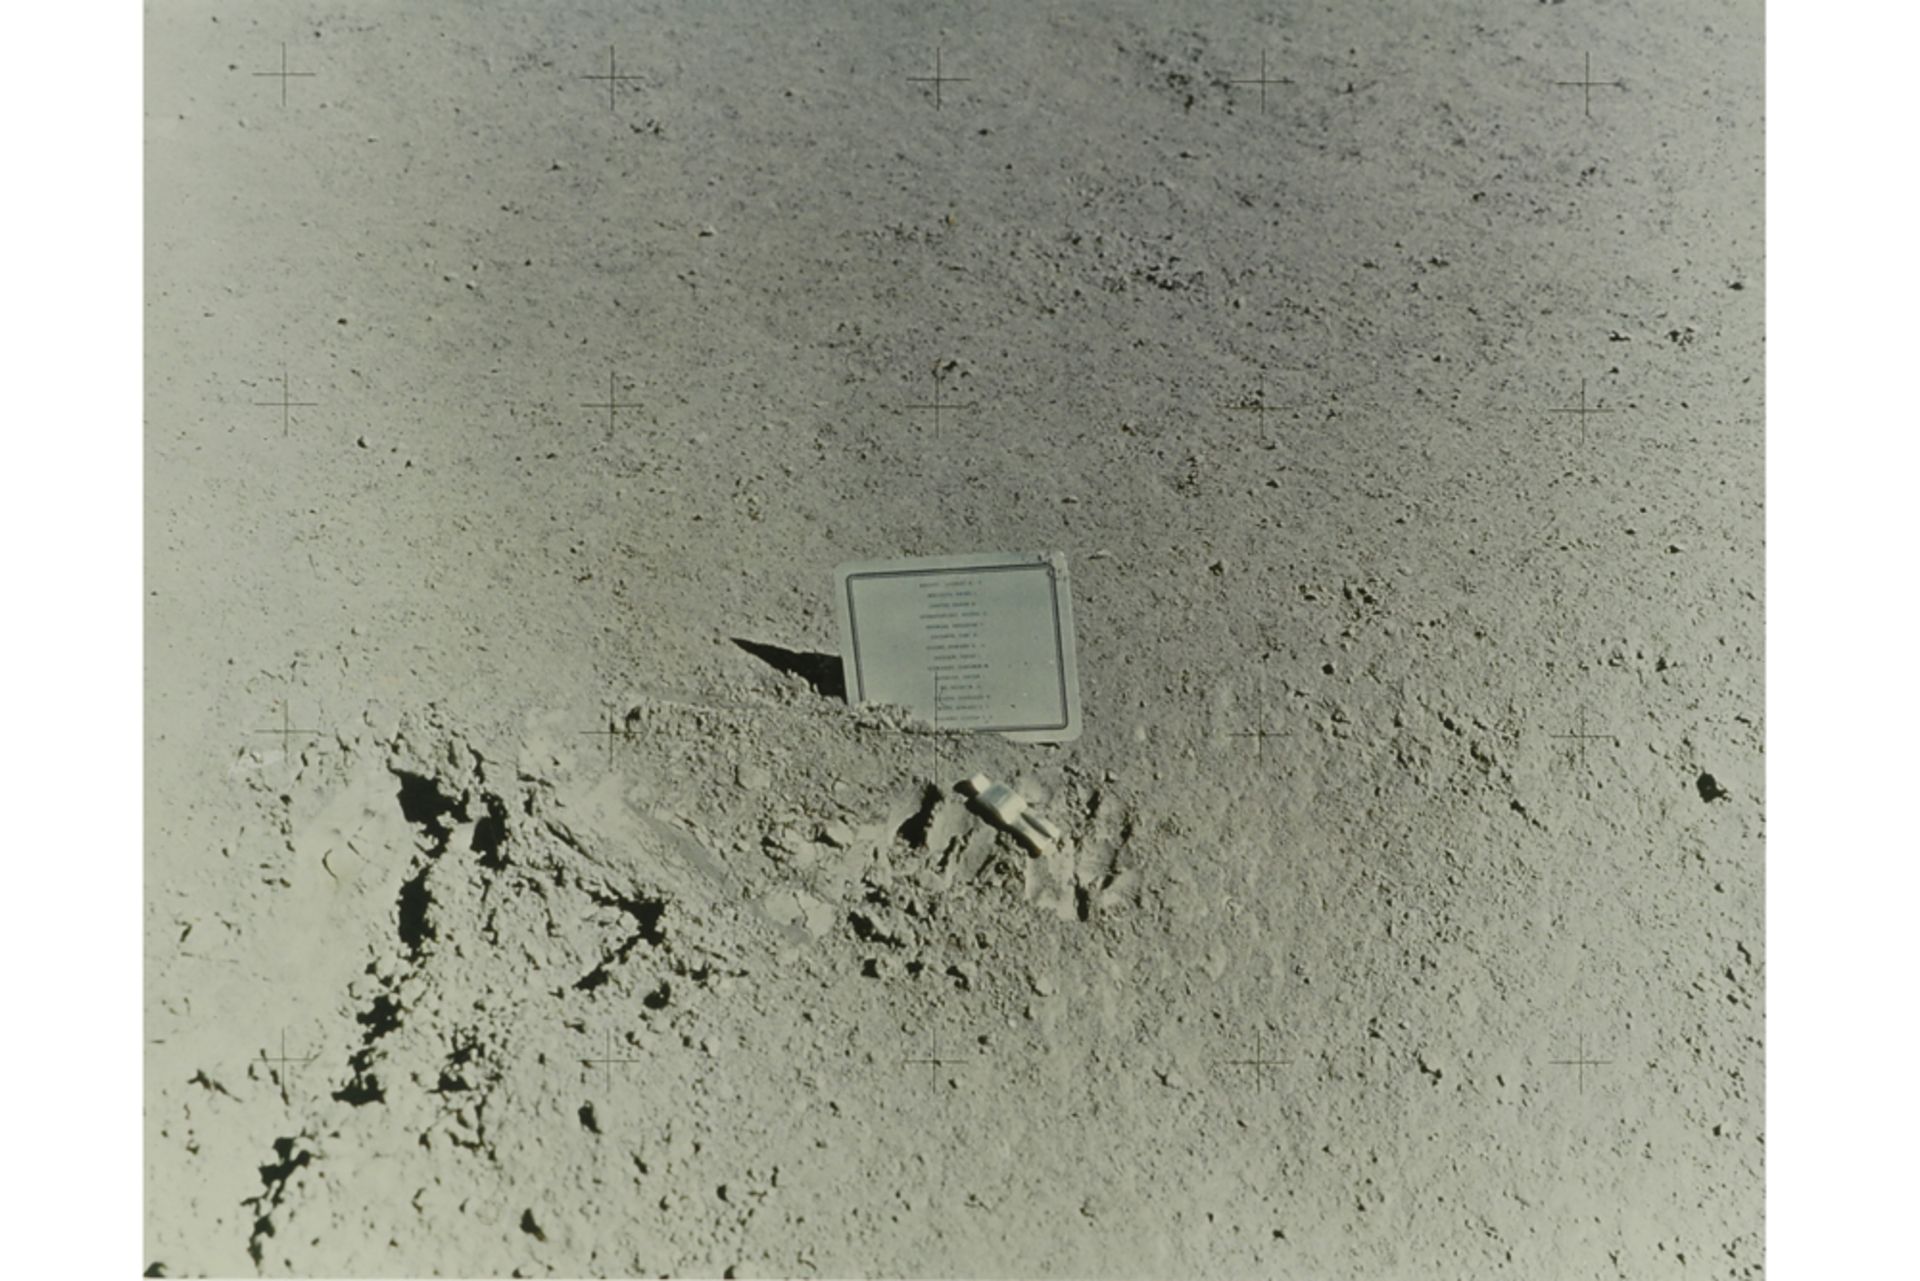 Paul Van Hoeydonck "Fallen Astronaut" photo print , edition by Ronny Van de Velde (Museum op schaal)